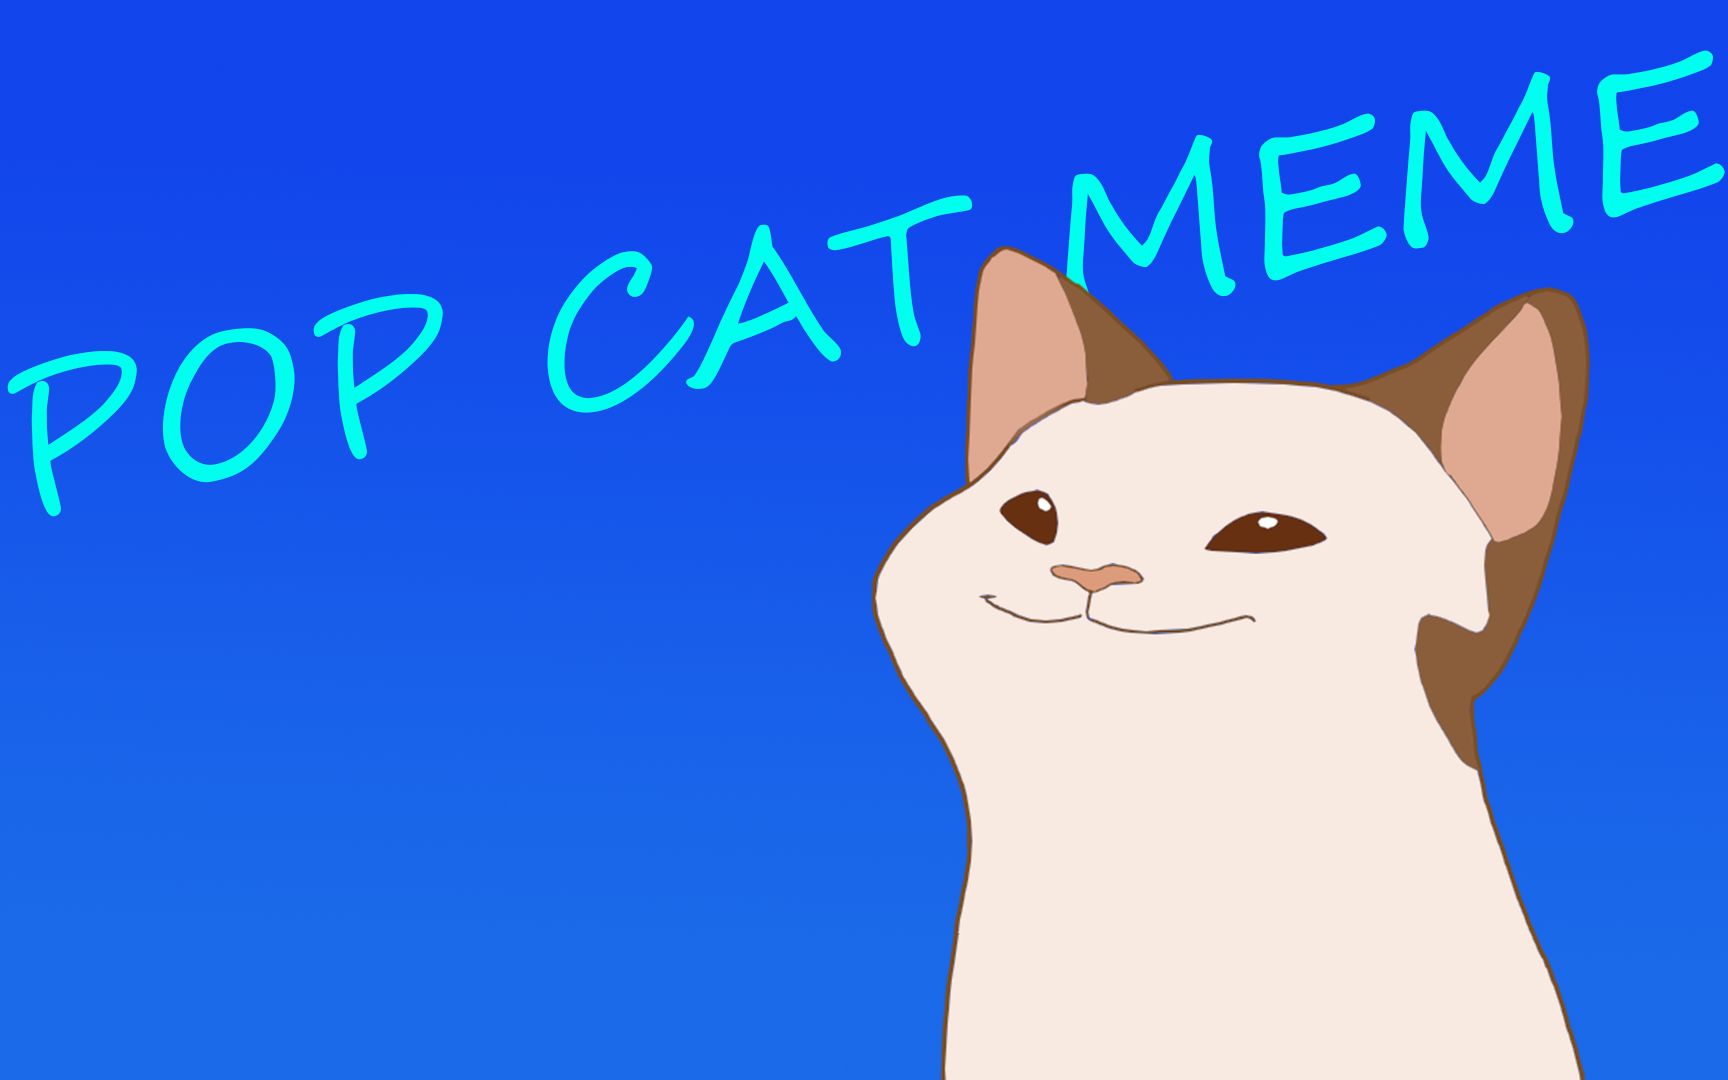 【pop cat】nyan cat meme